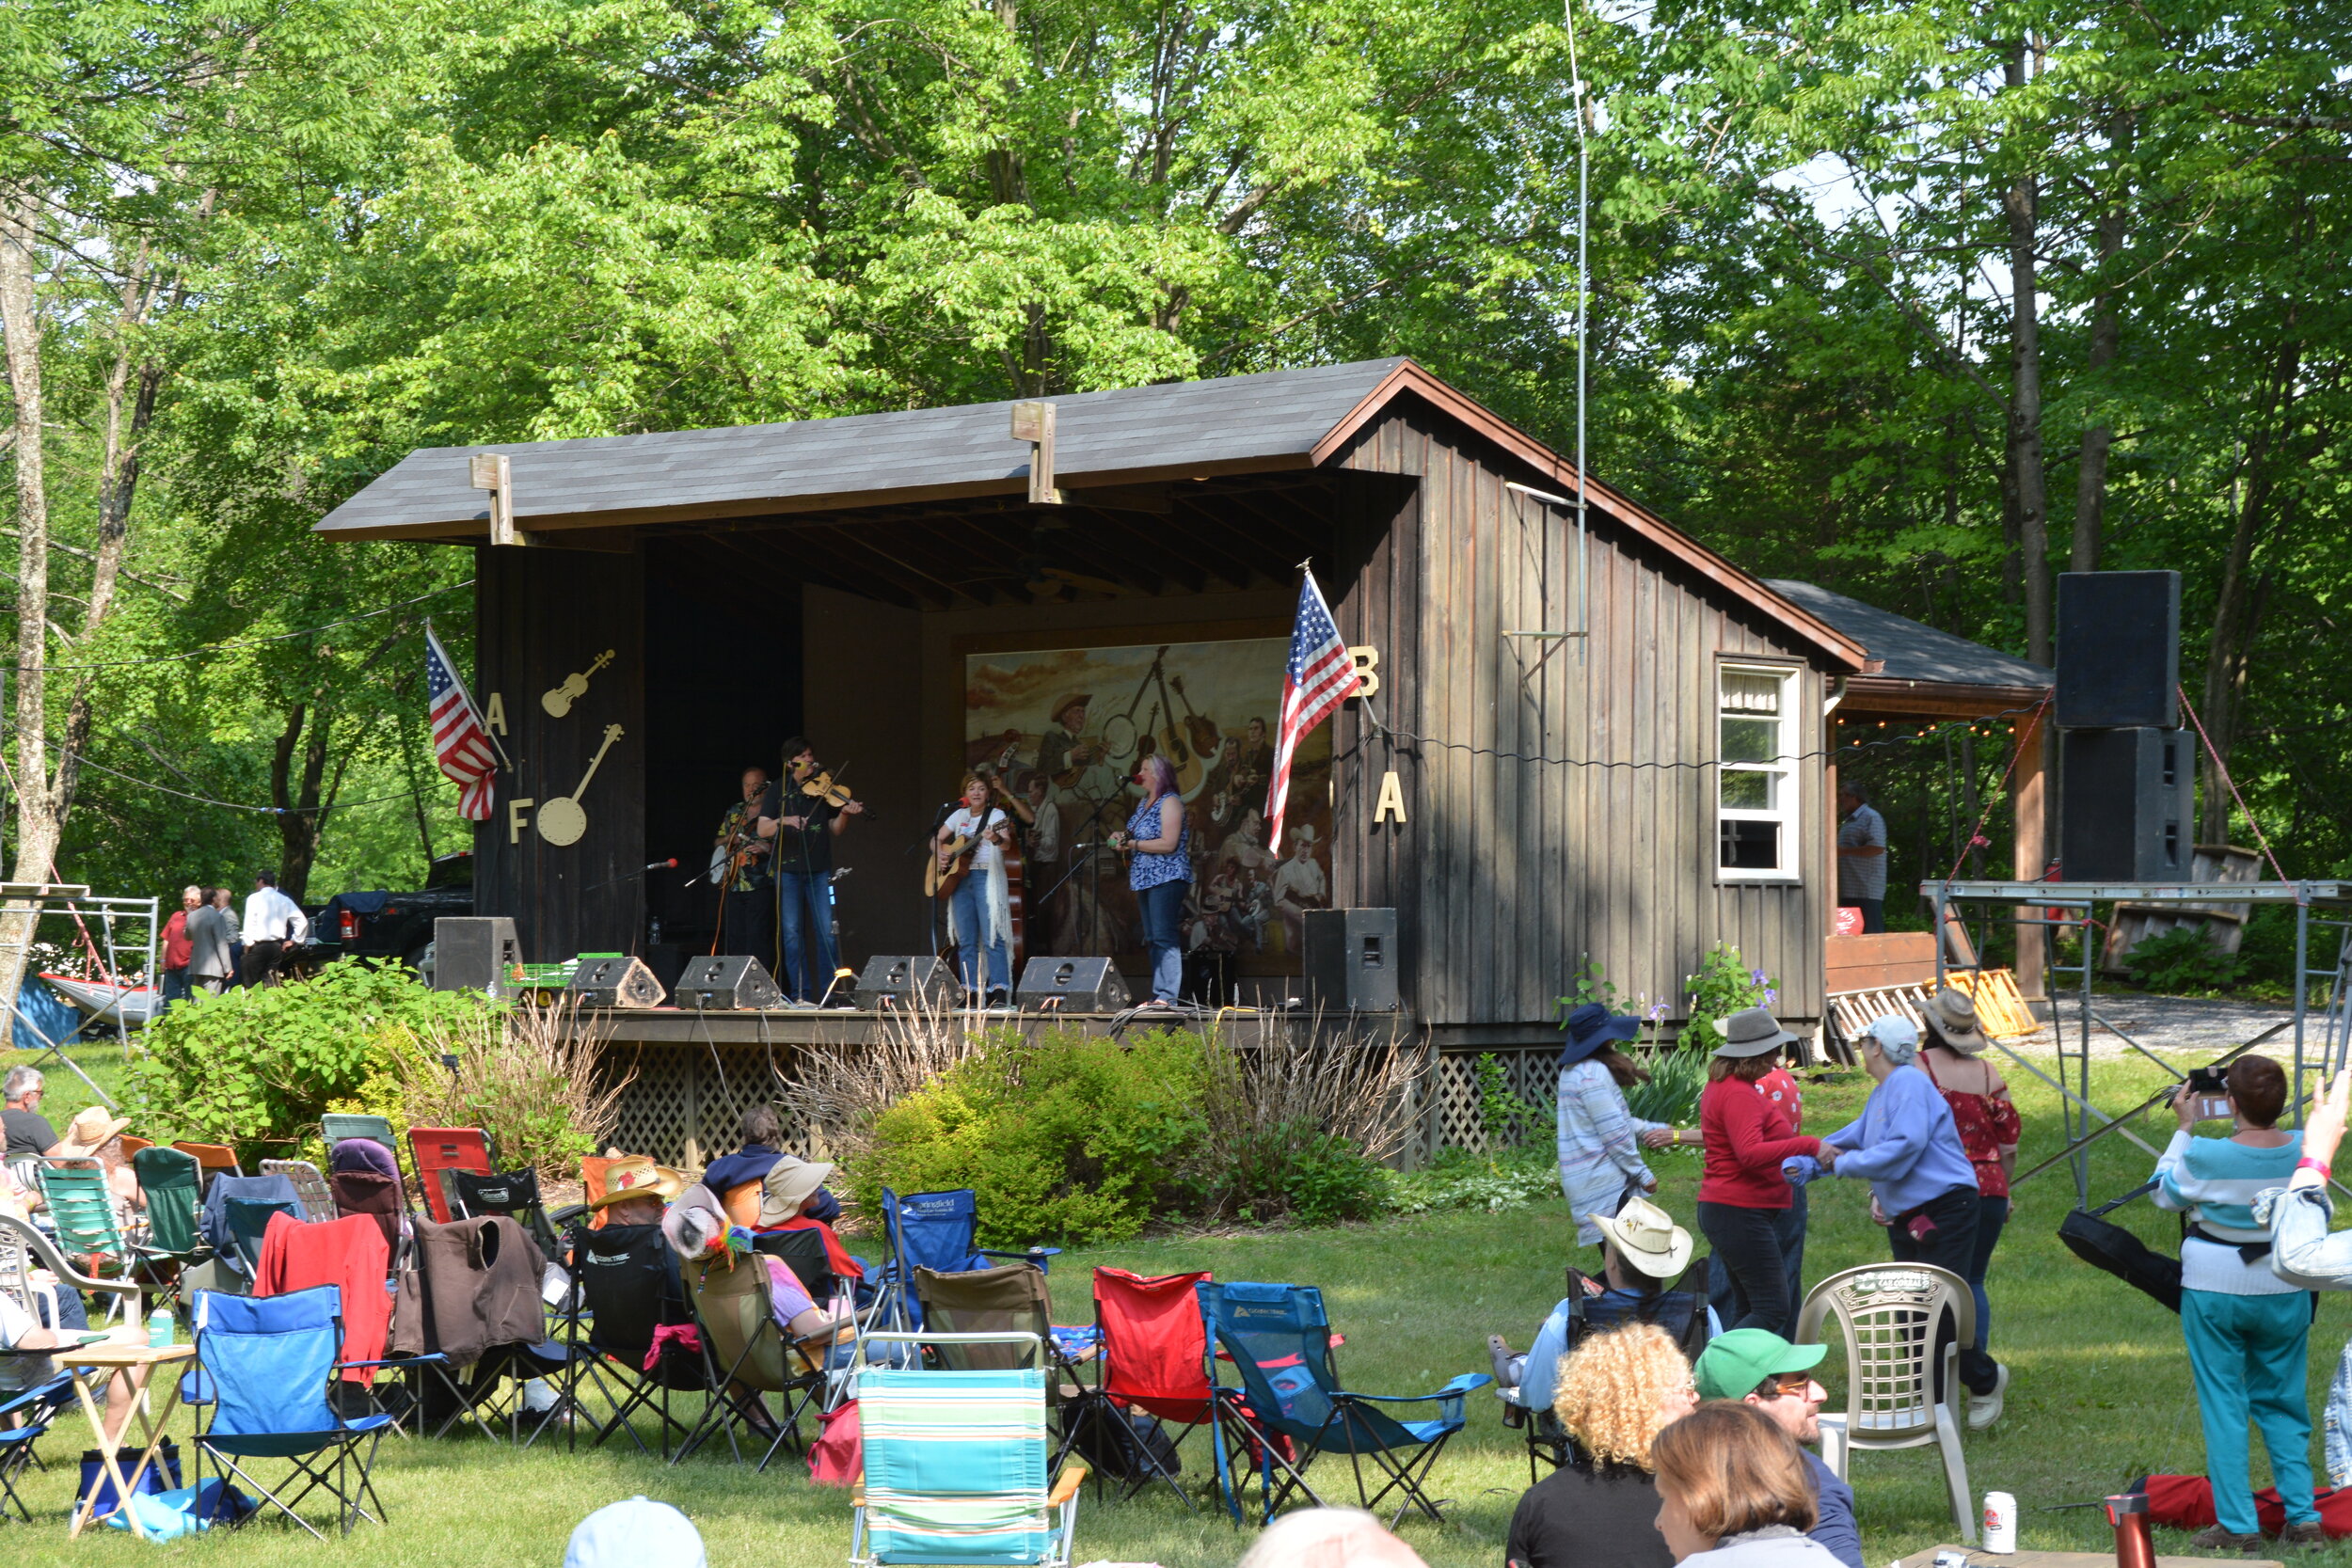 About — Wind Gap Bluegrass Festival